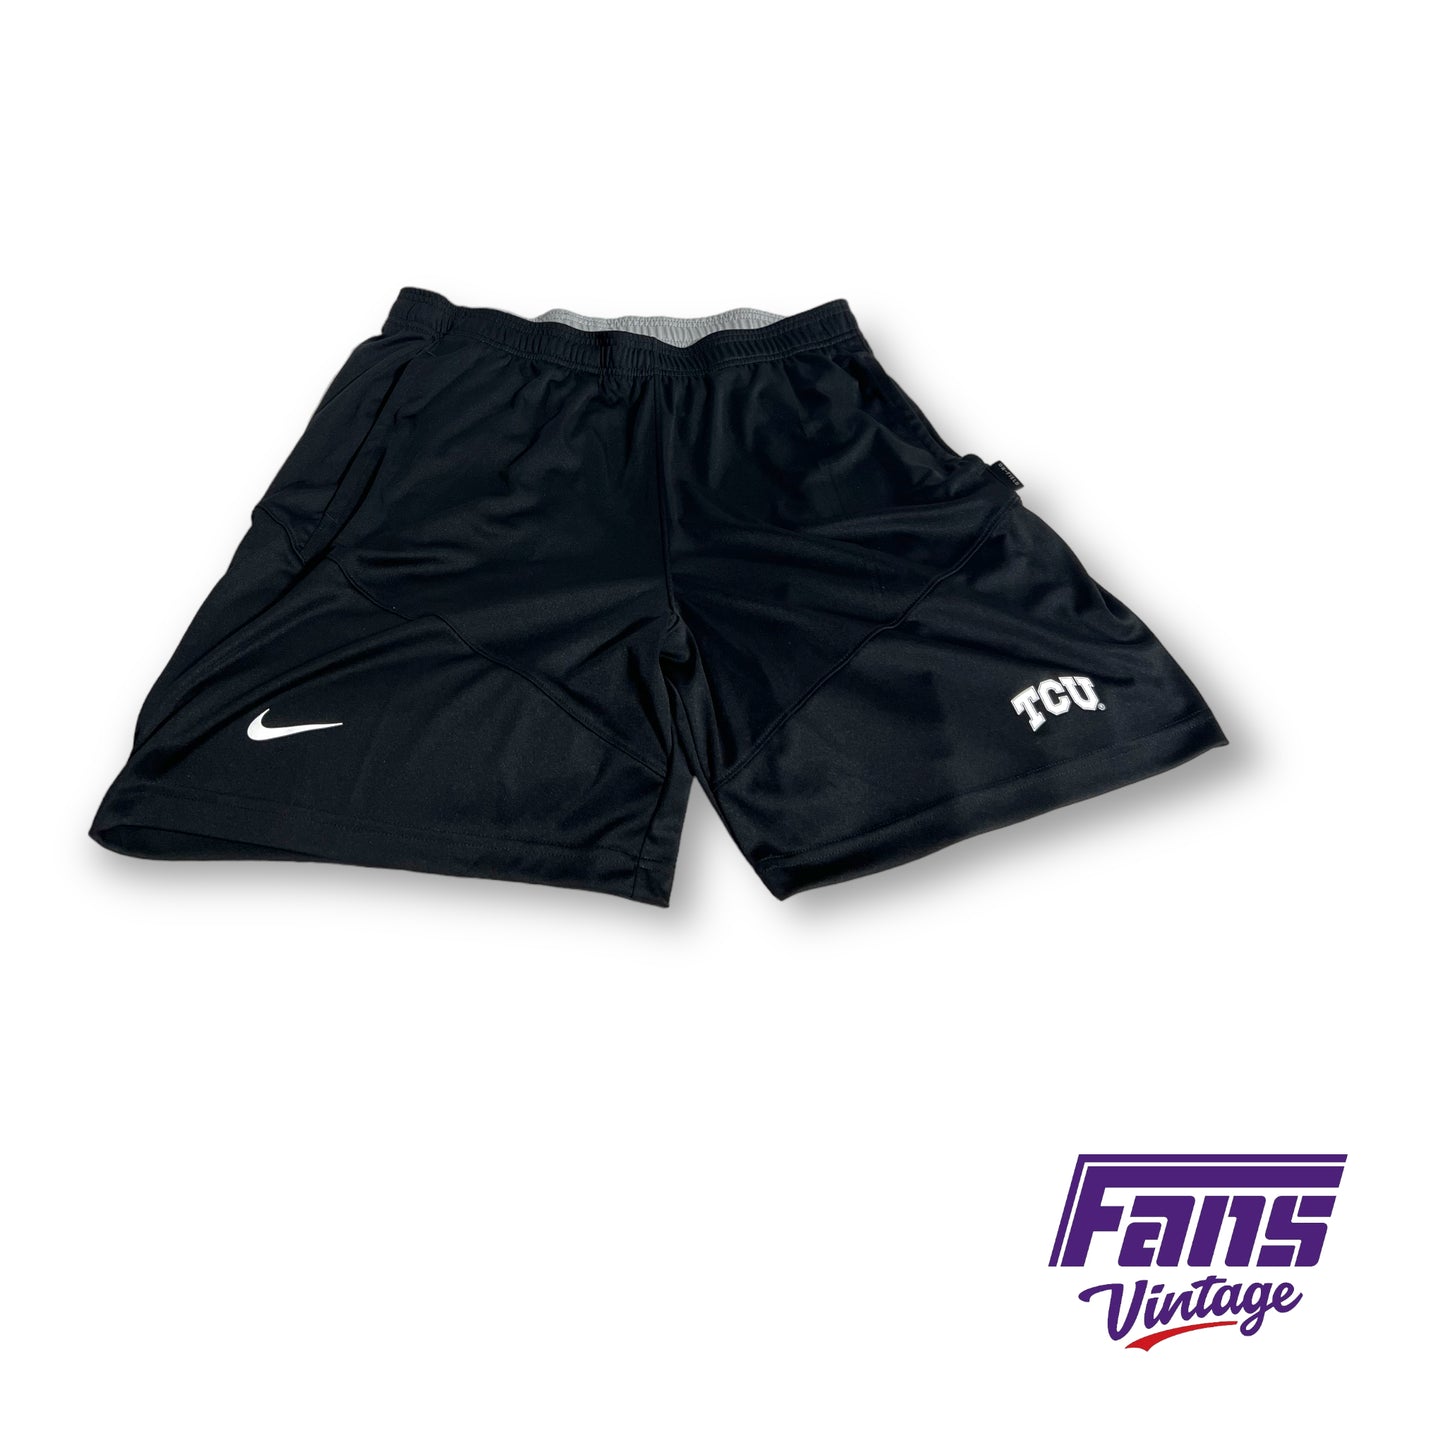 Nike TCU 'on the field' Premium dri-fit training shorts